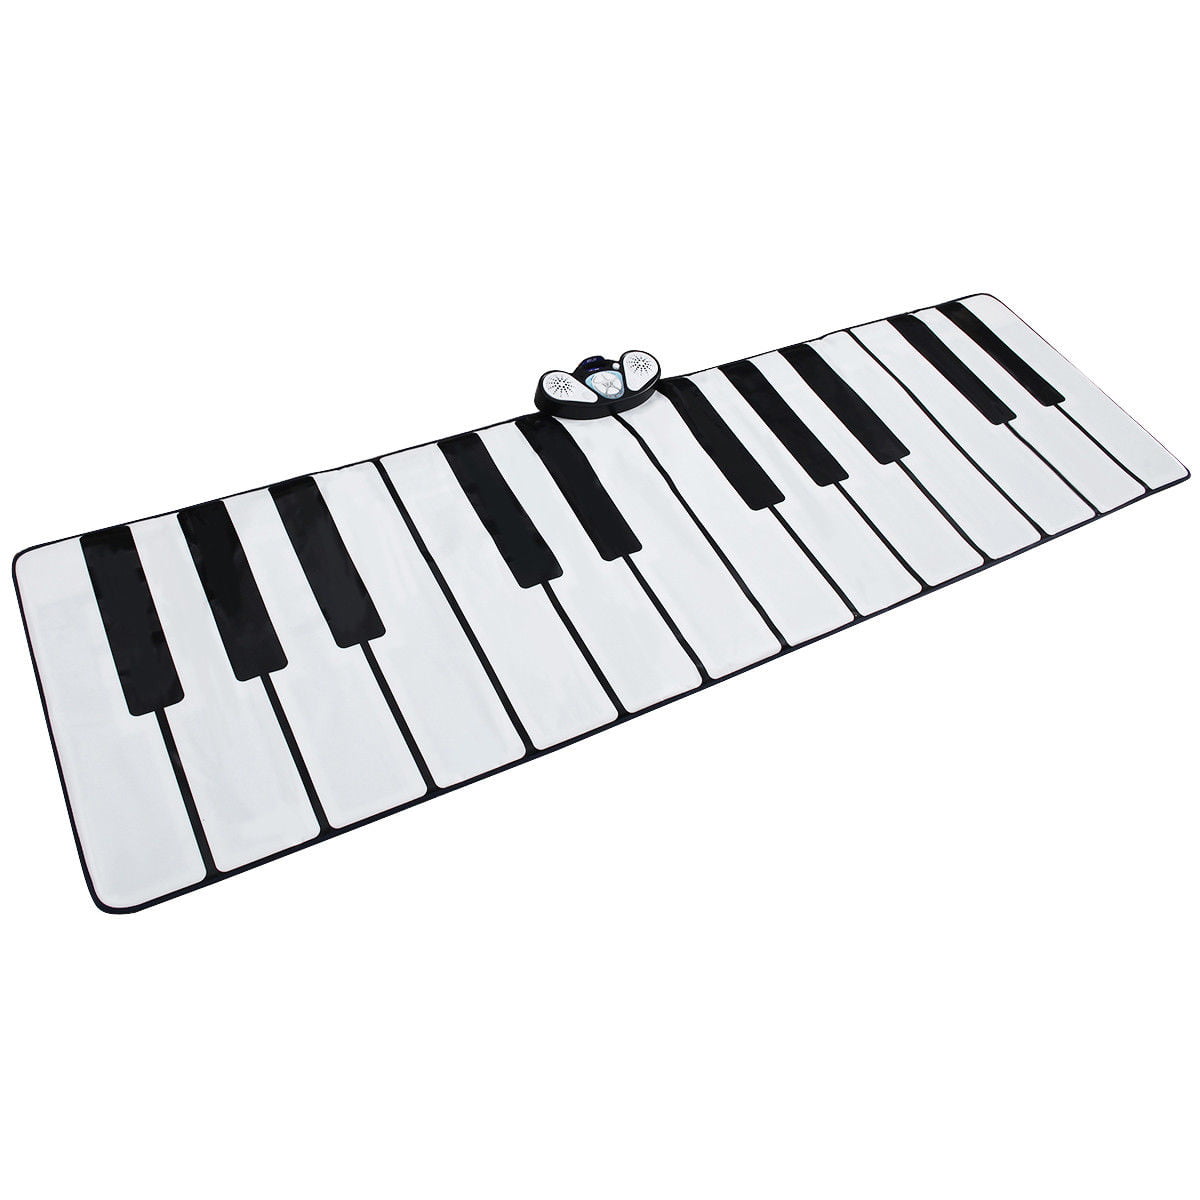 24 Keys Piano Mat Click N' Play Gigantic Keyboard Play Mat 8 Selectable 